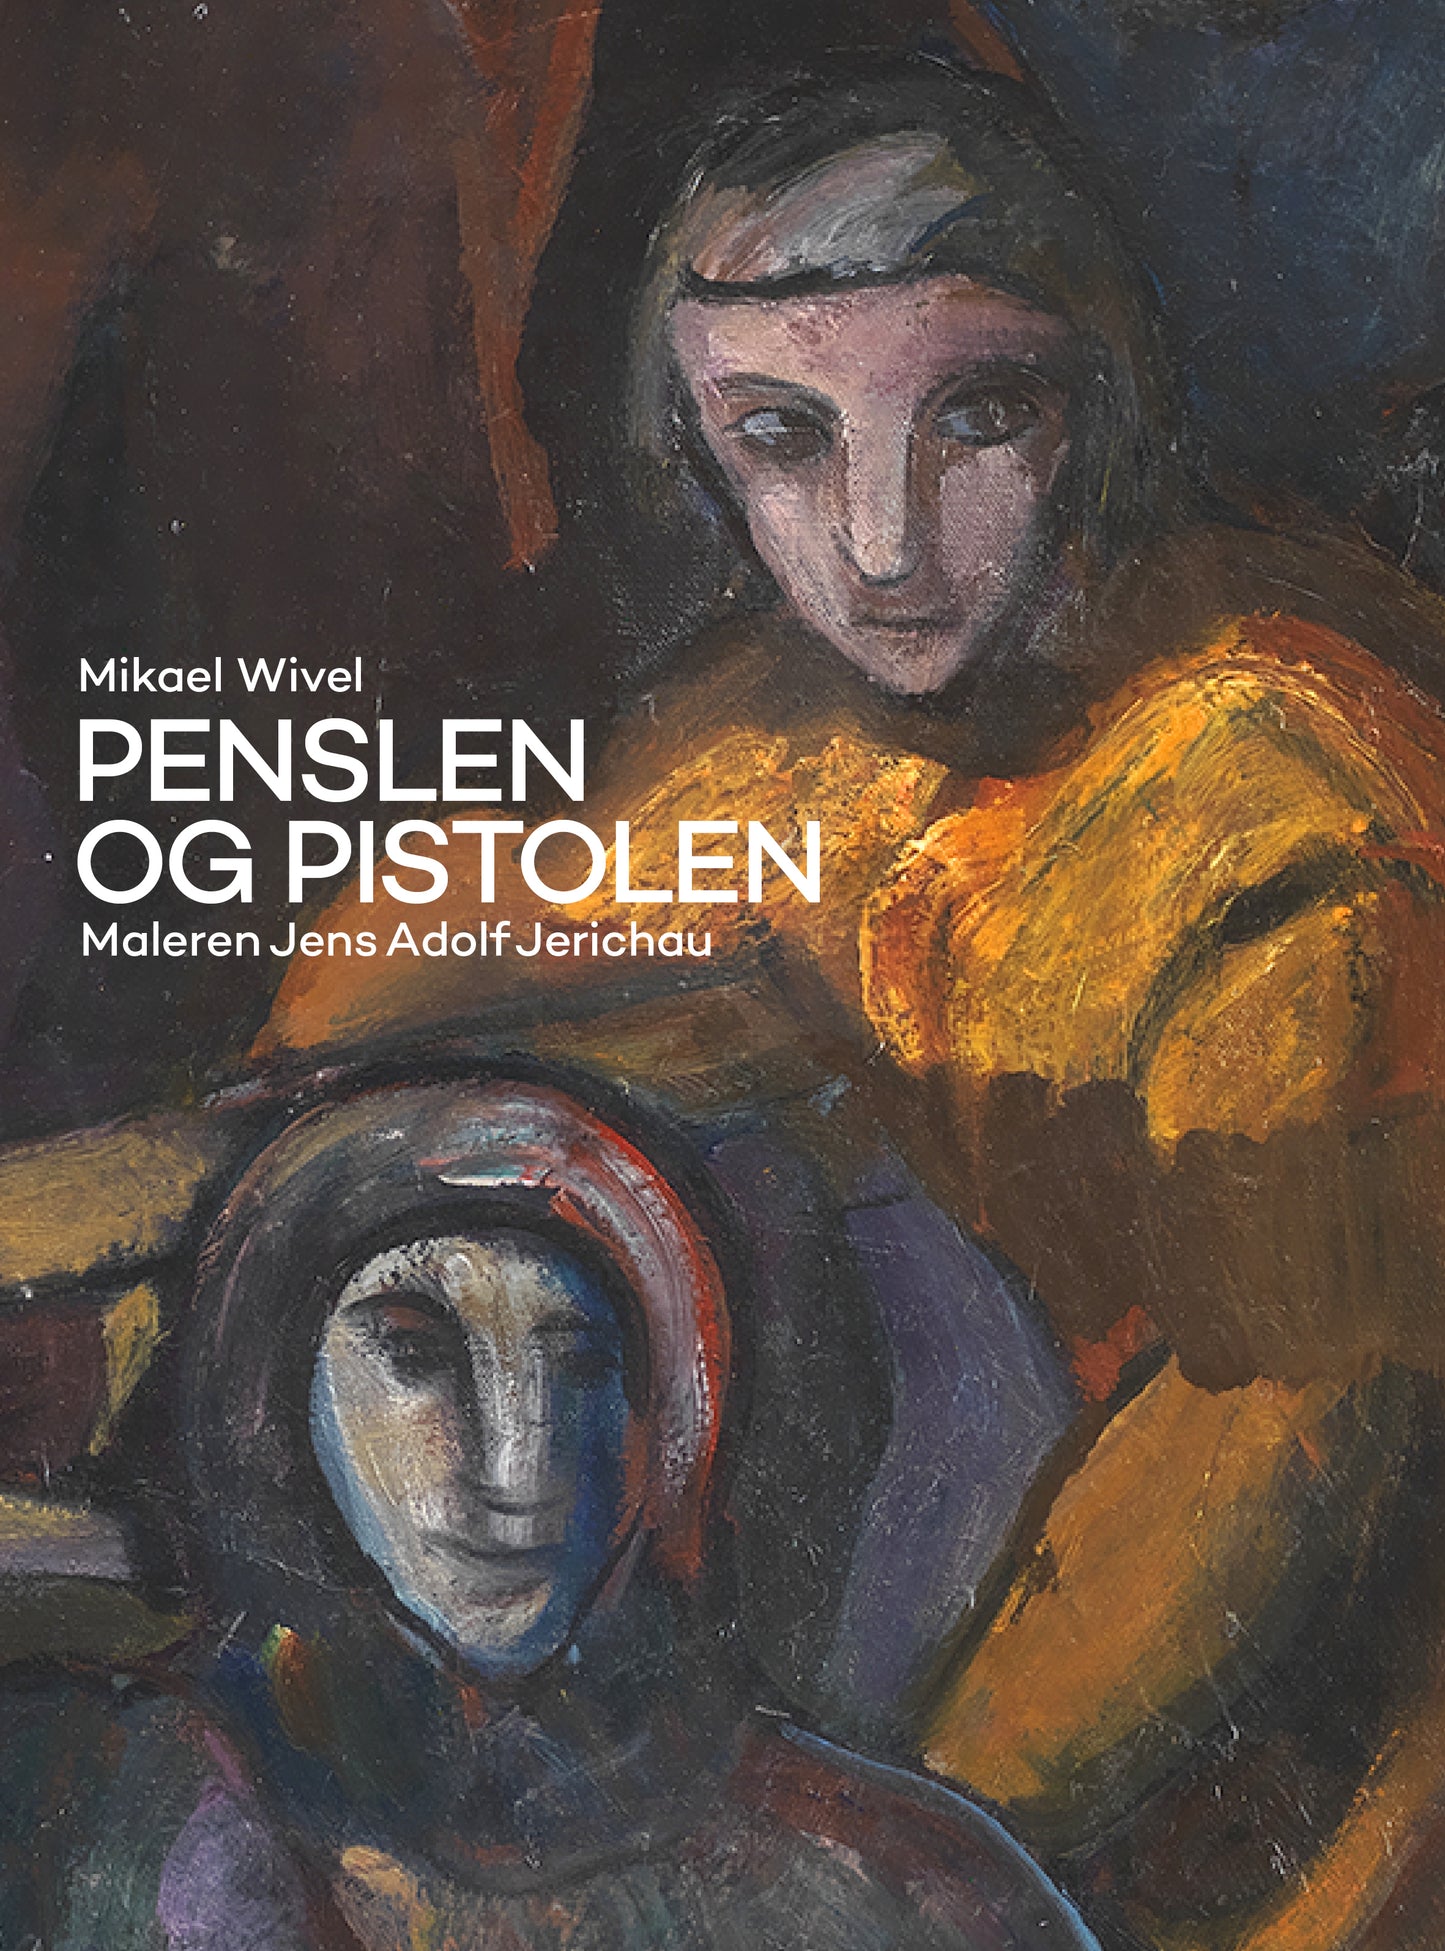 Penslen og Pistolen - Maleren Jens Adolf Jerichau